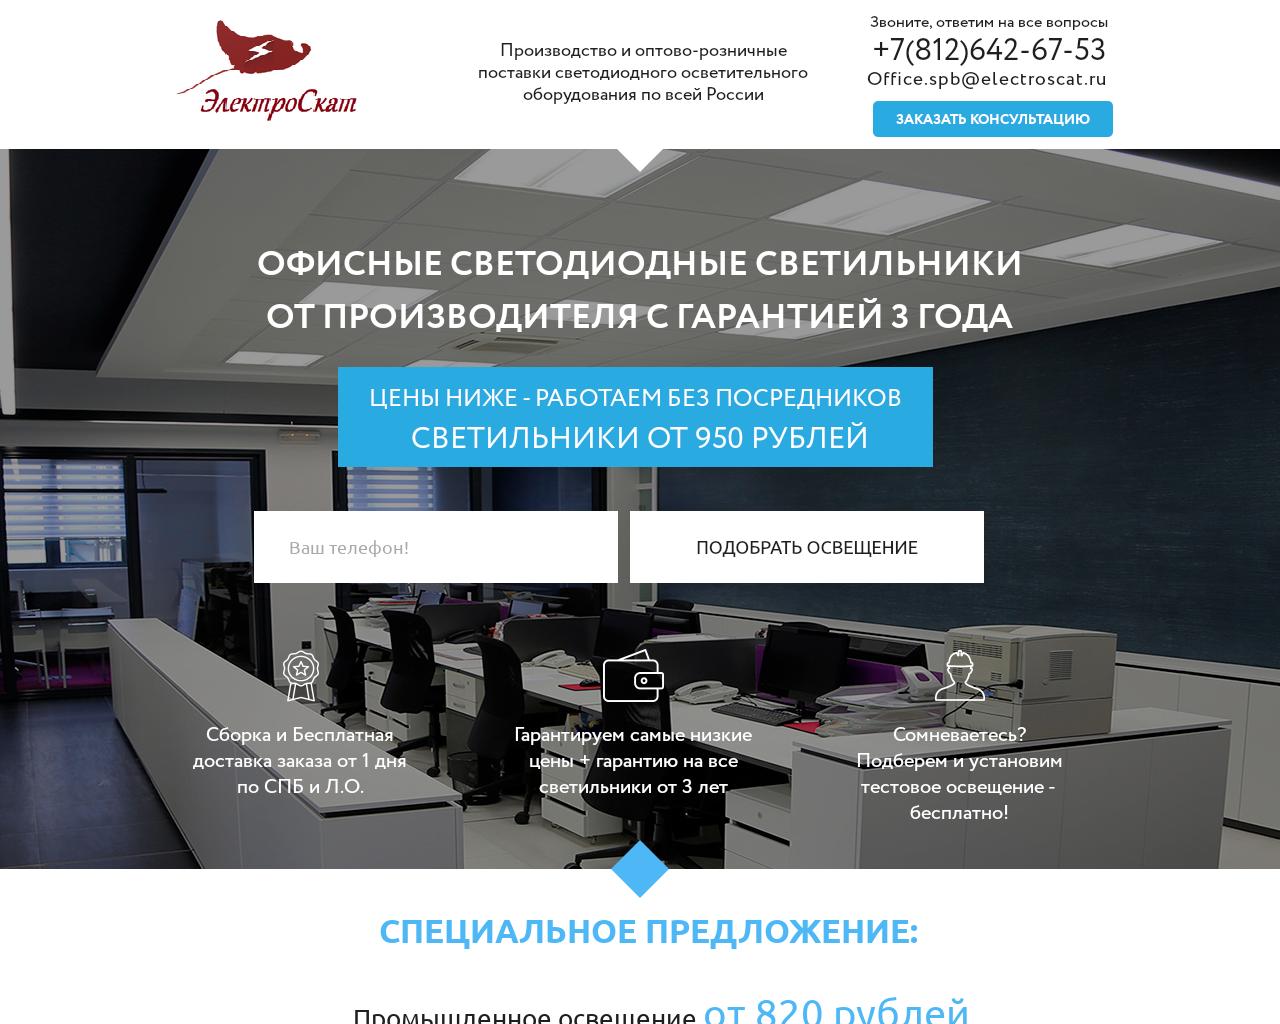 Изображение сайта promo-svet.ru в разрешении 1280x1024